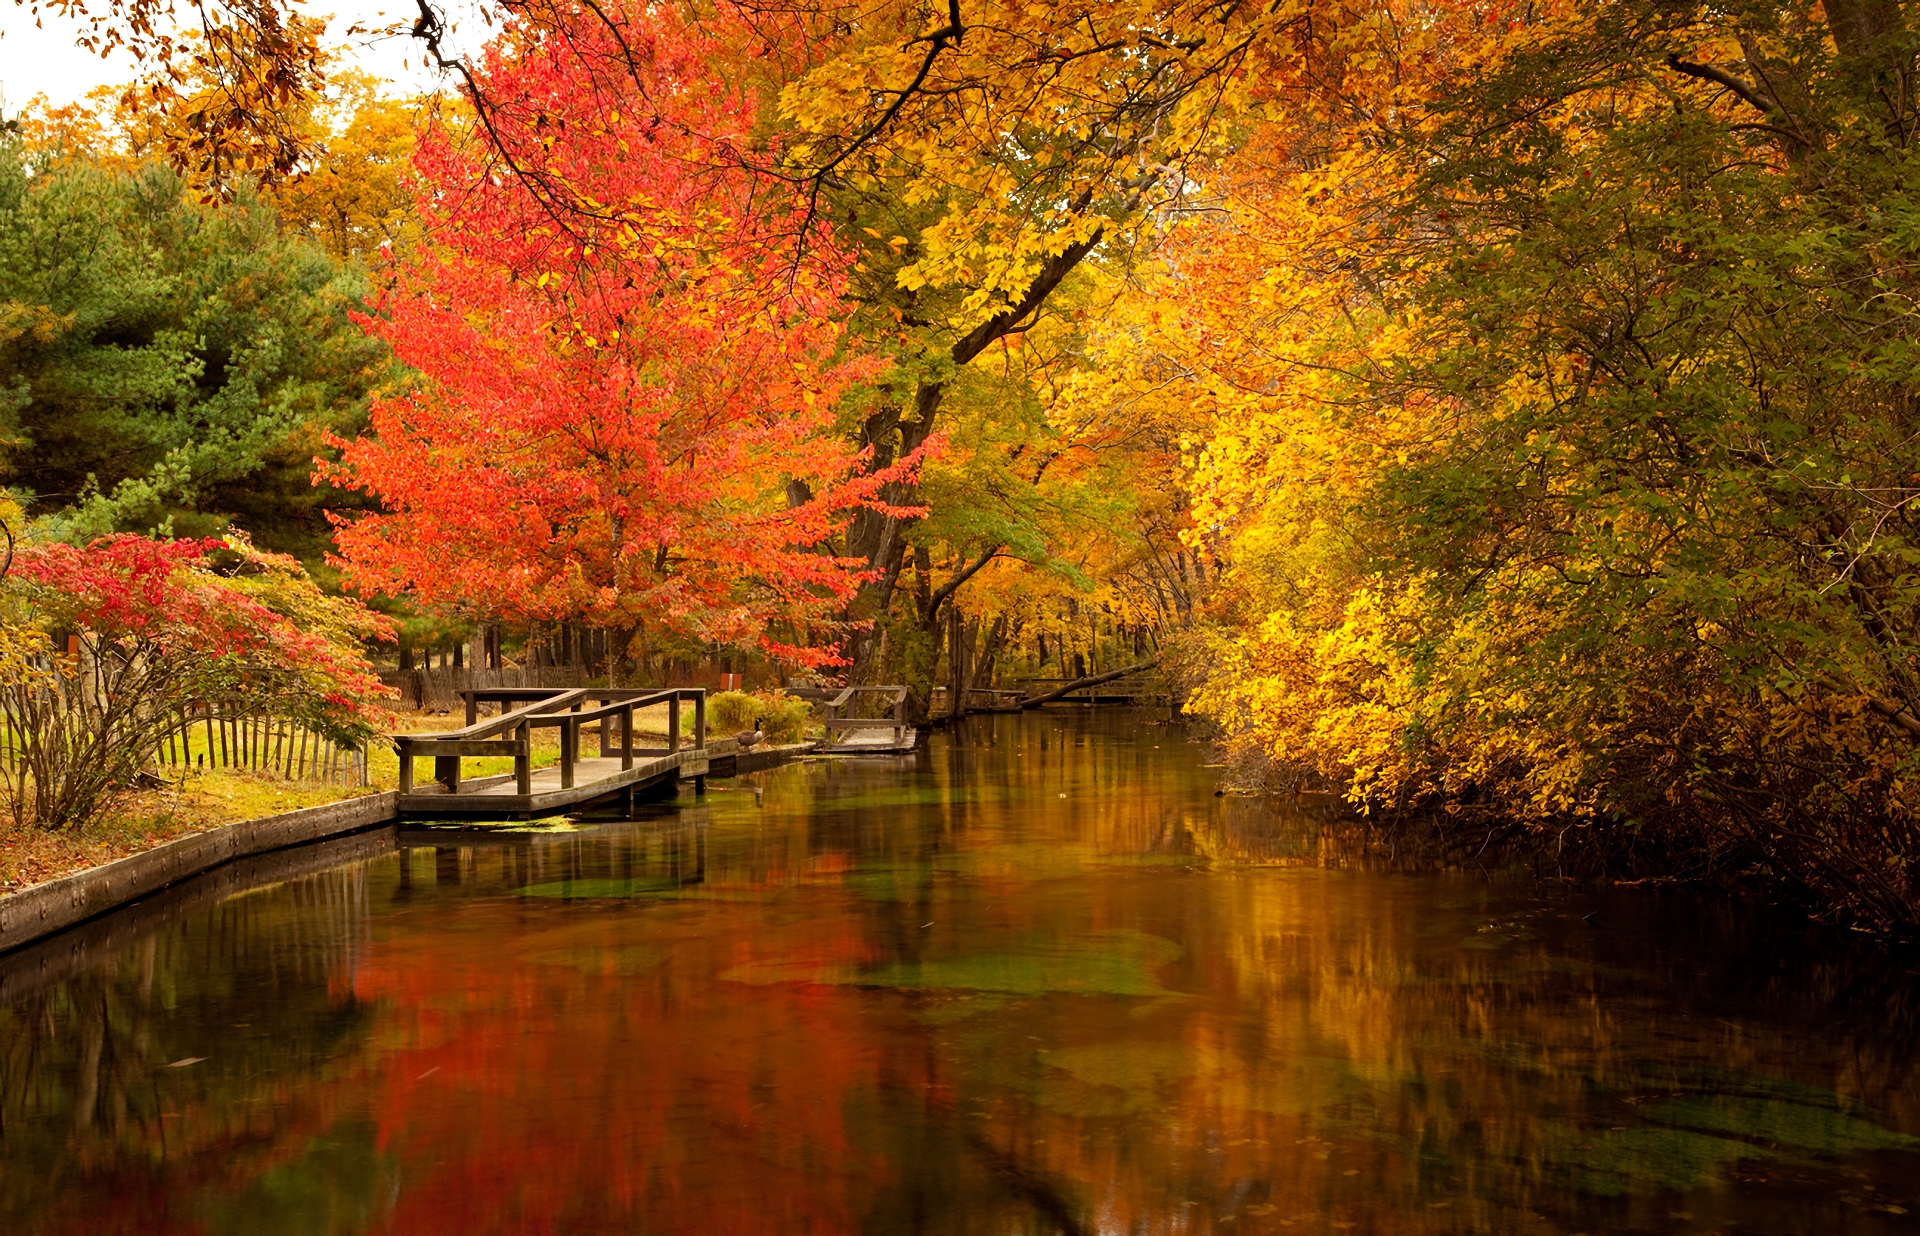 Скачать обои бесплатно Осень, Парк, Дерево, Пруд, Фотографии картинка на рабочий стол ПК